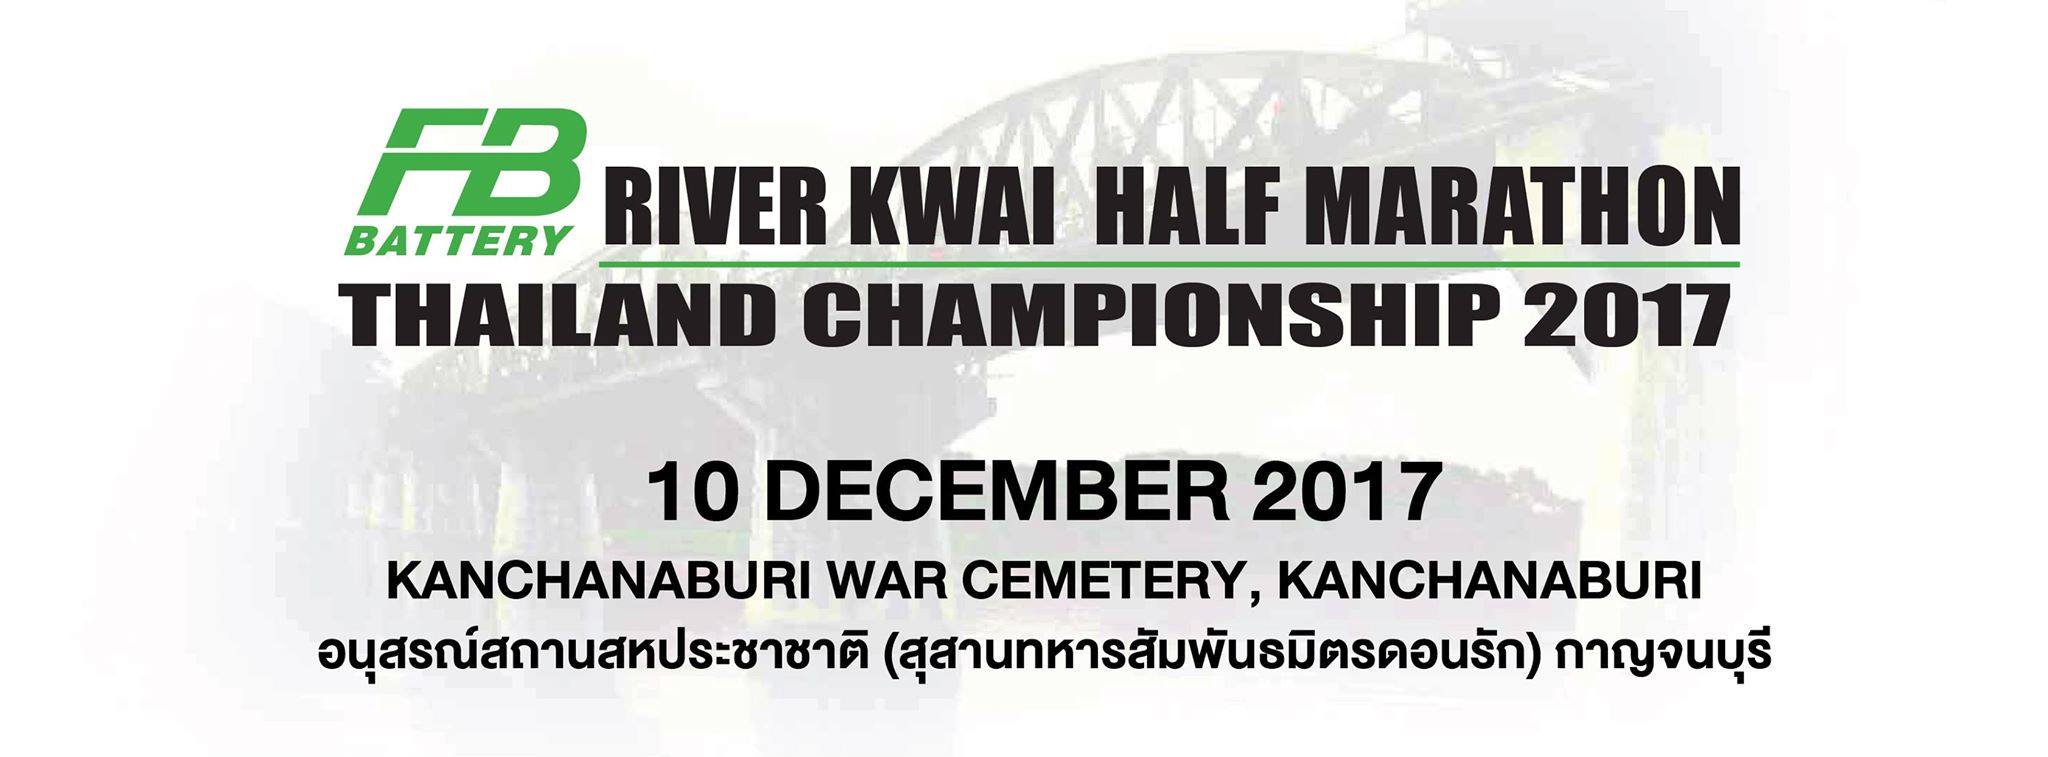 River Kwai Half Marathon Thailand Champion 2017